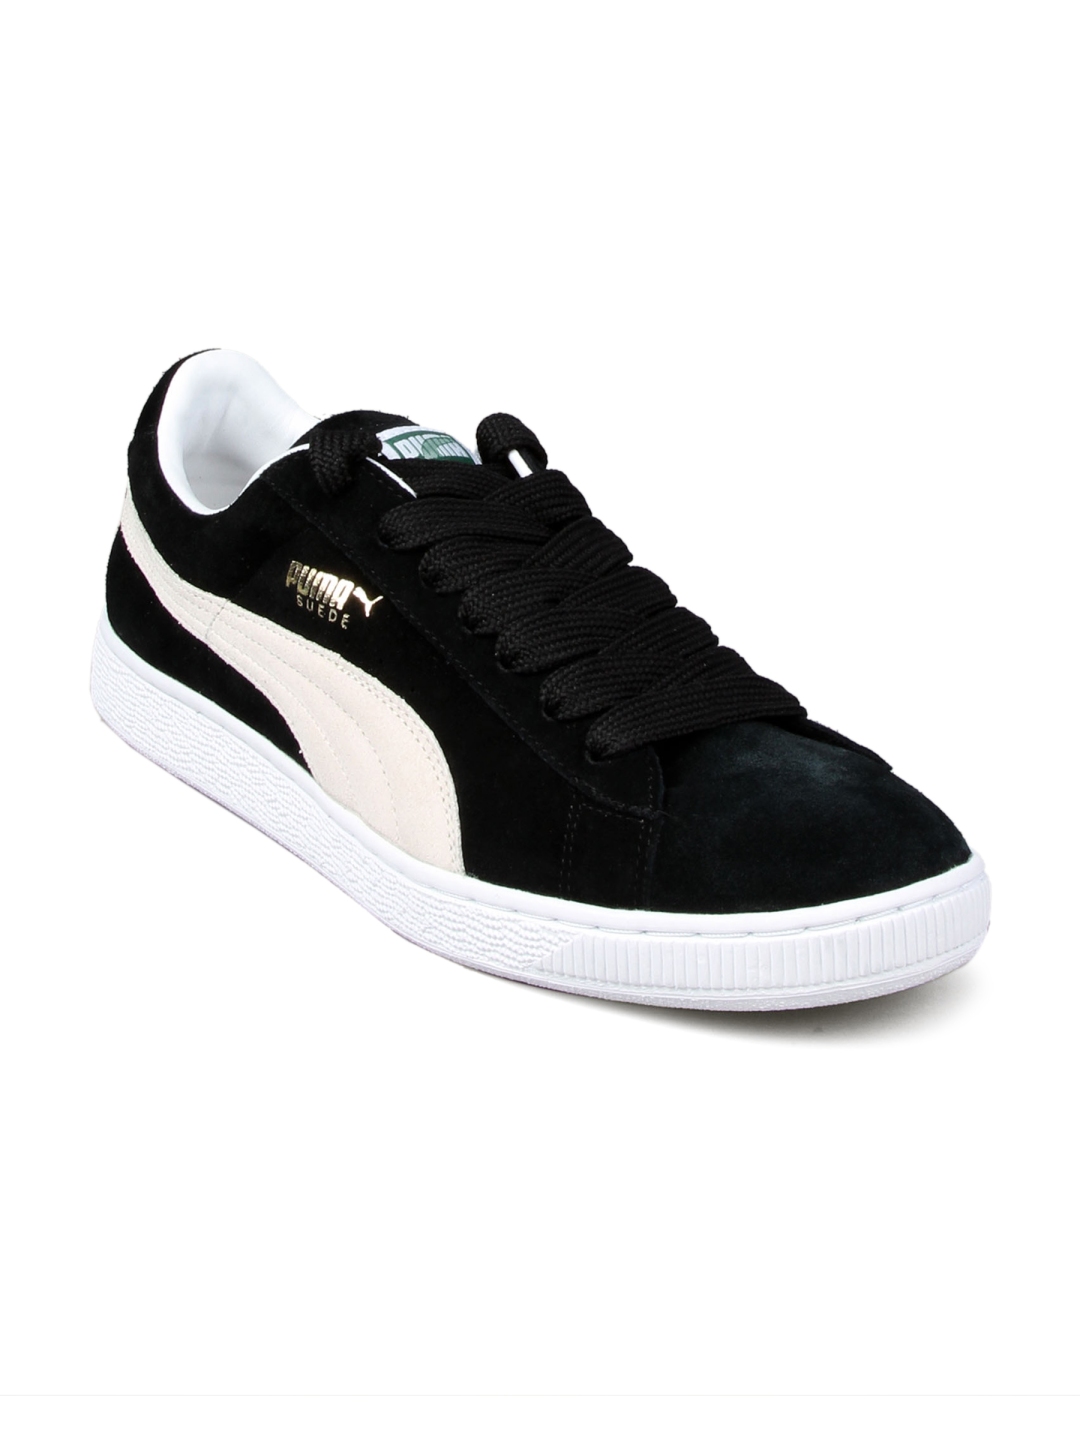 Buy Puma Men's Suede Archive Black White Shoe - Sports Shoes for Men ...